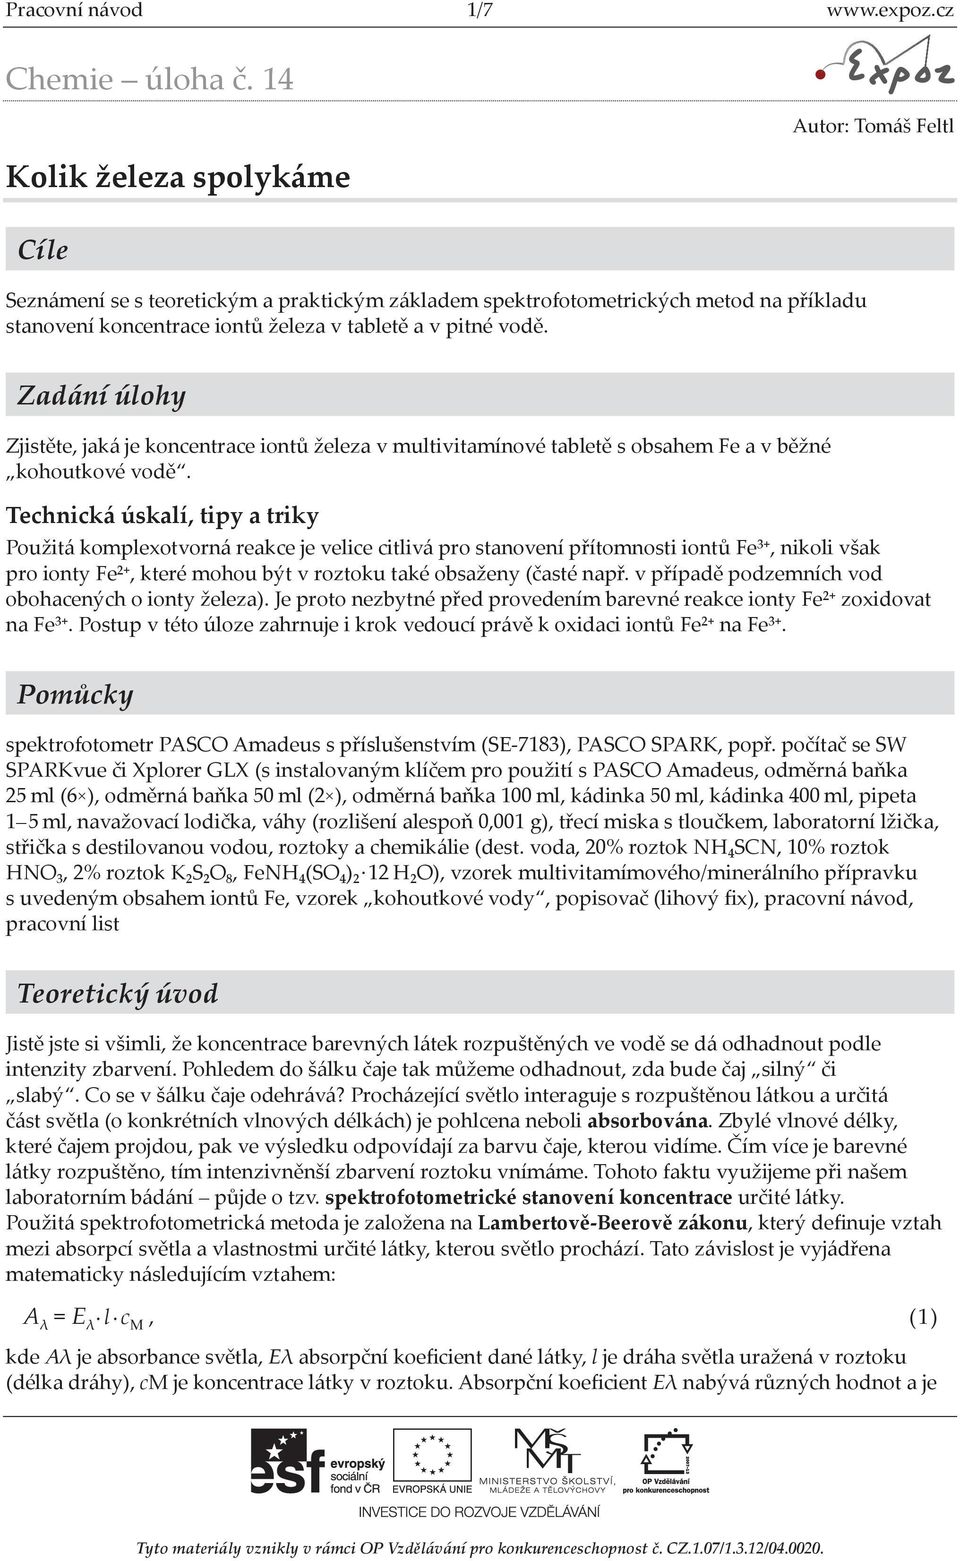 Pracovní návod 1/7 - PDF Stažení zdarma